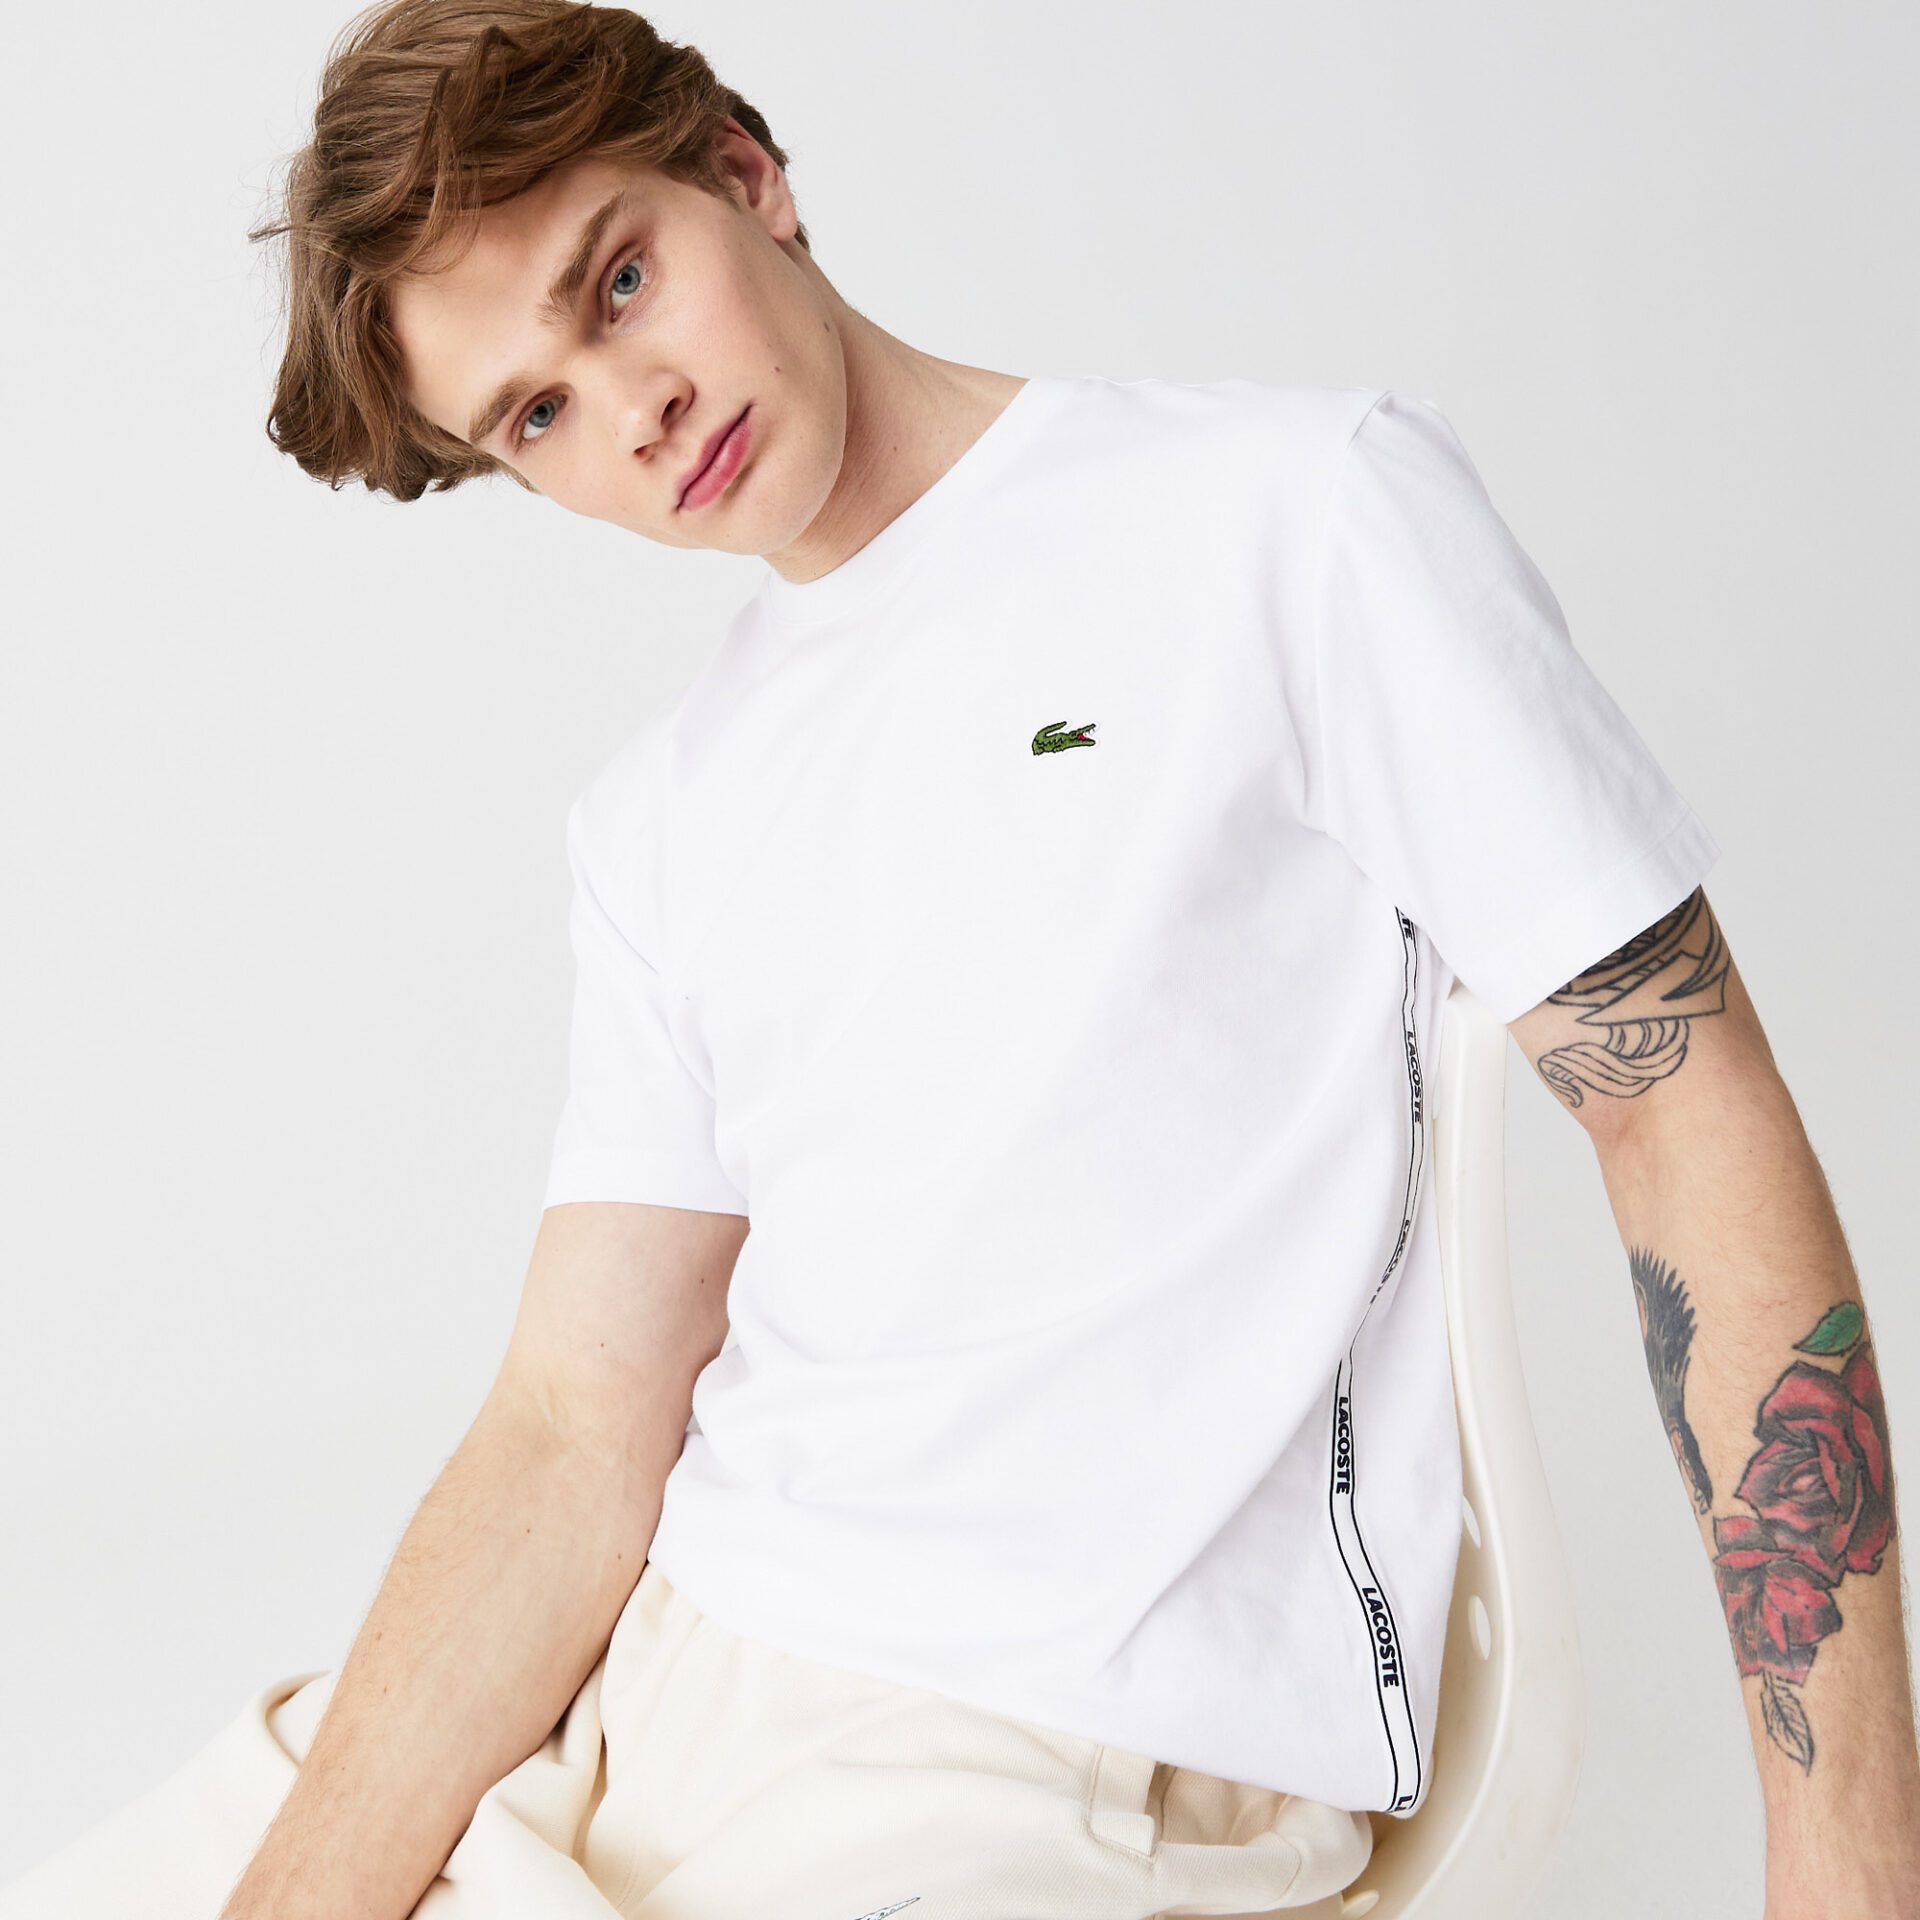 Мужская Хлопковая футболка Lacoste с круглым вырезом и фирменными полосами